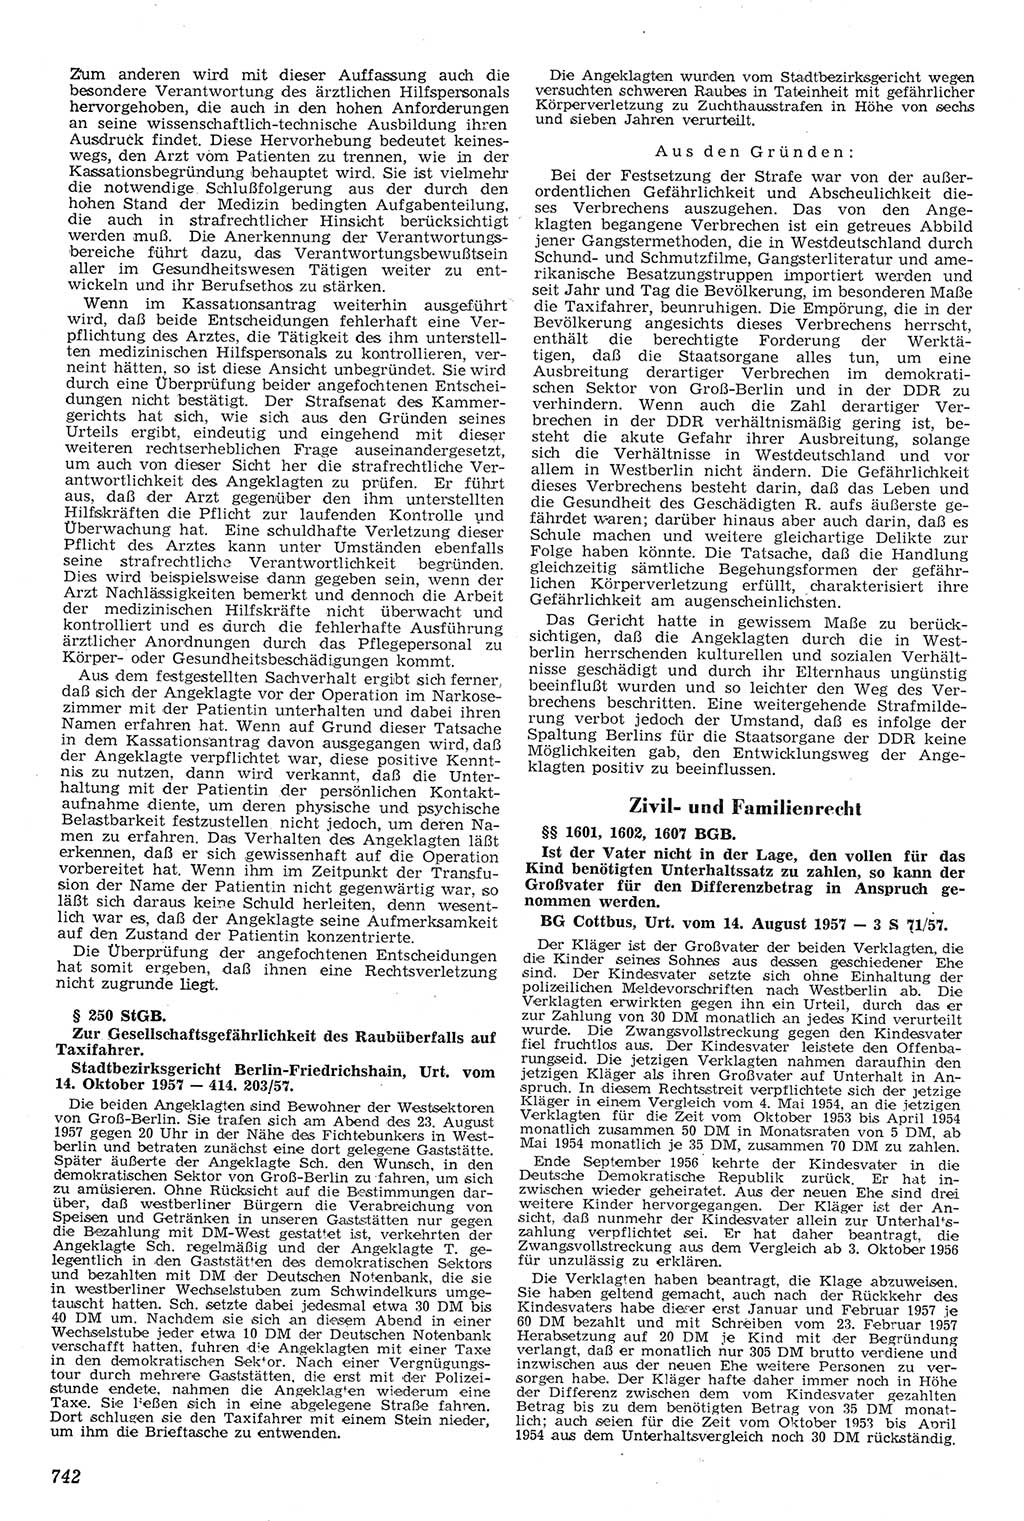 Neue Justiz (NJ), Zeitschrift für Recht und Rechtswissenschaft [Deutsche Demokratische Republik (DDR)], 11. Jahrgang 1957, Seite 742 (NJ DDR 1957, S. 742)